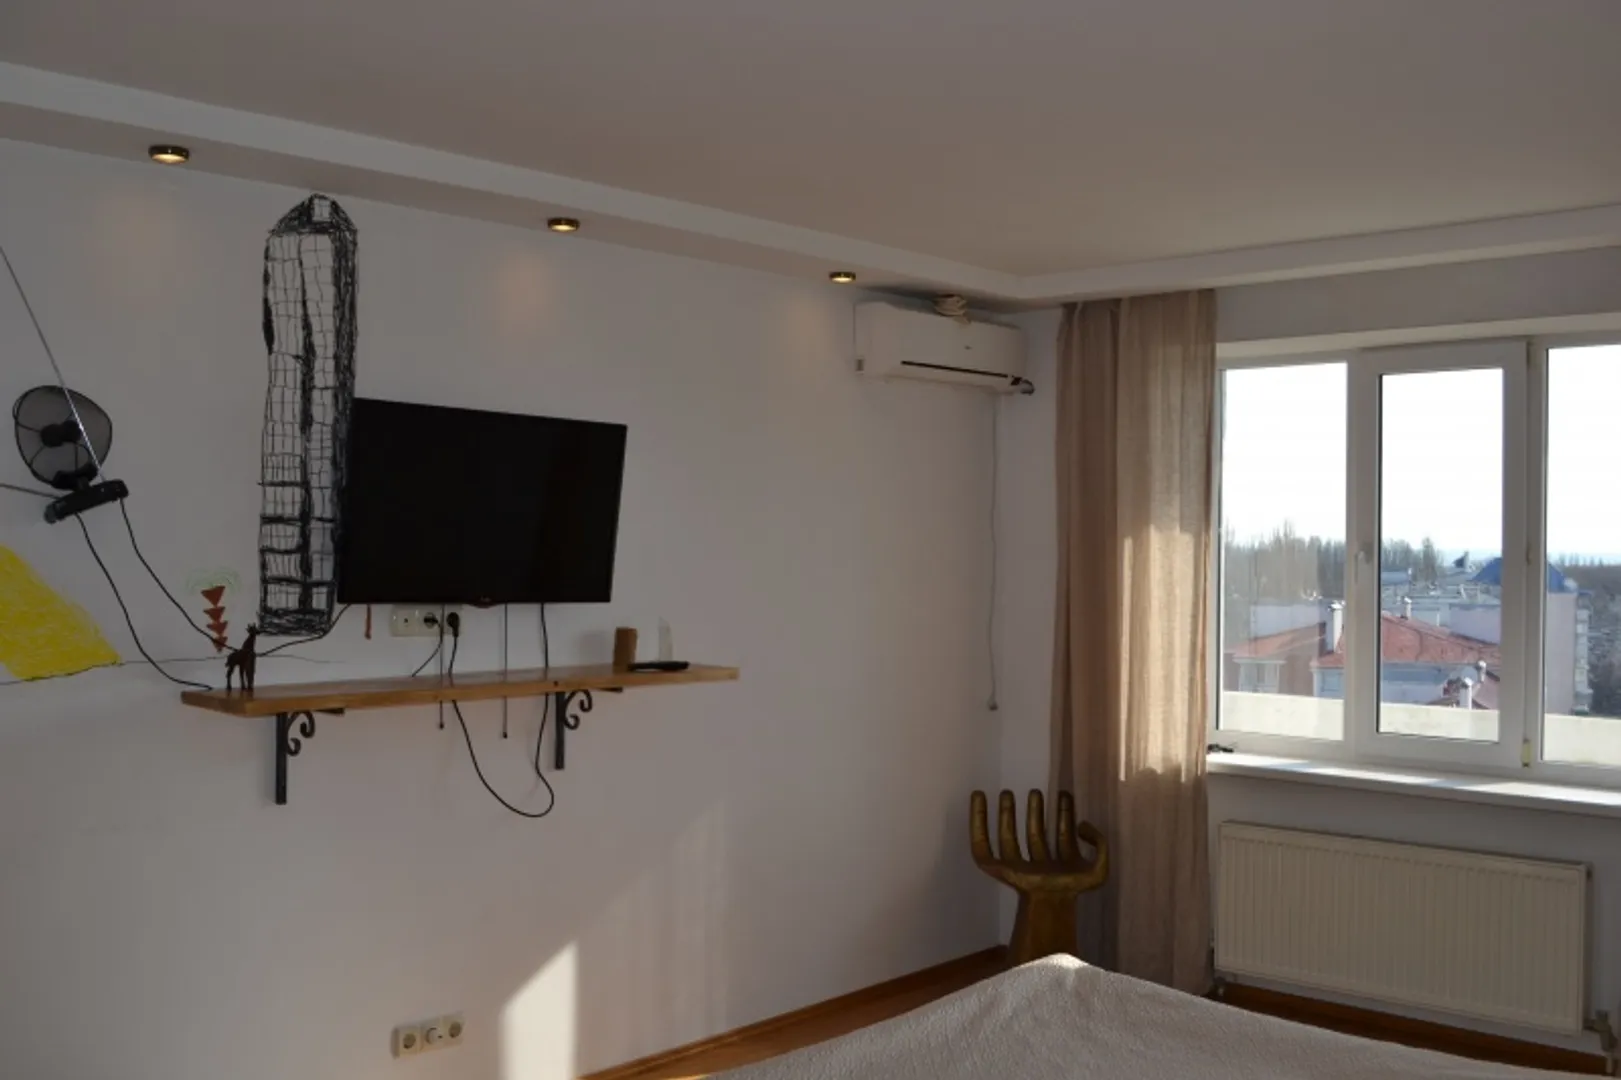 Спальня №1: большой телевизор, кондиционер, выход на балкон, комод из цельного дуба, кровать 1,8*2м